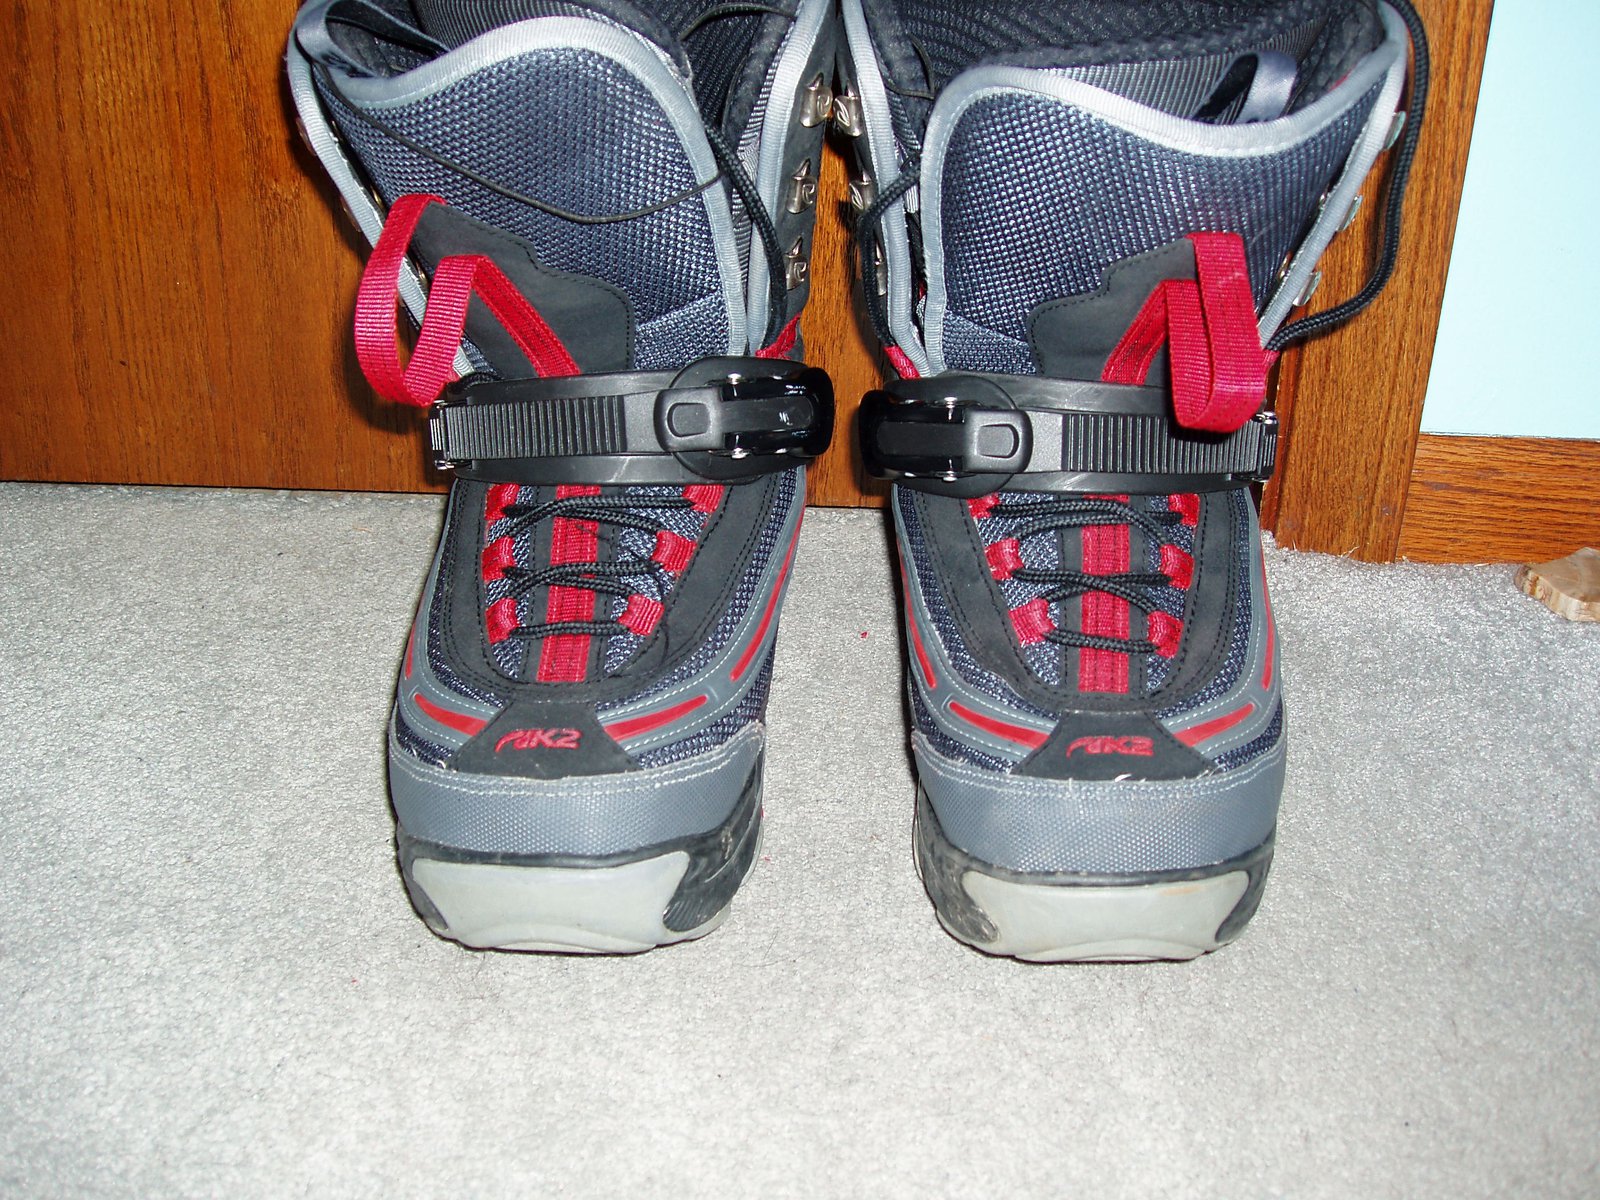 Ski step in boot size 11